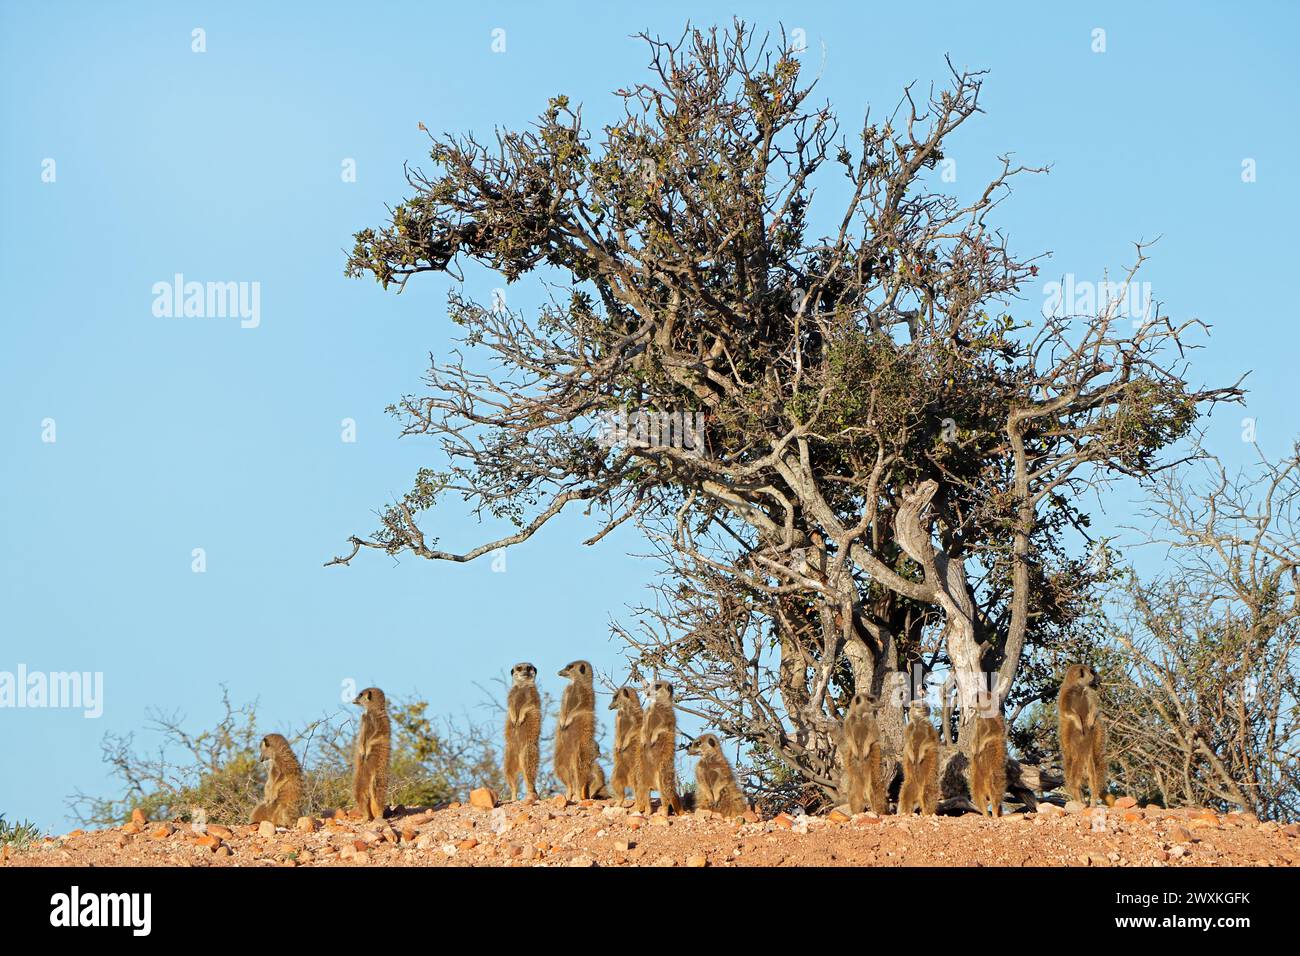 Die Familie der Alarmmeerkate (Suricata suricatta) in der natürlichen Umgebung Südafrikas Stockfoto